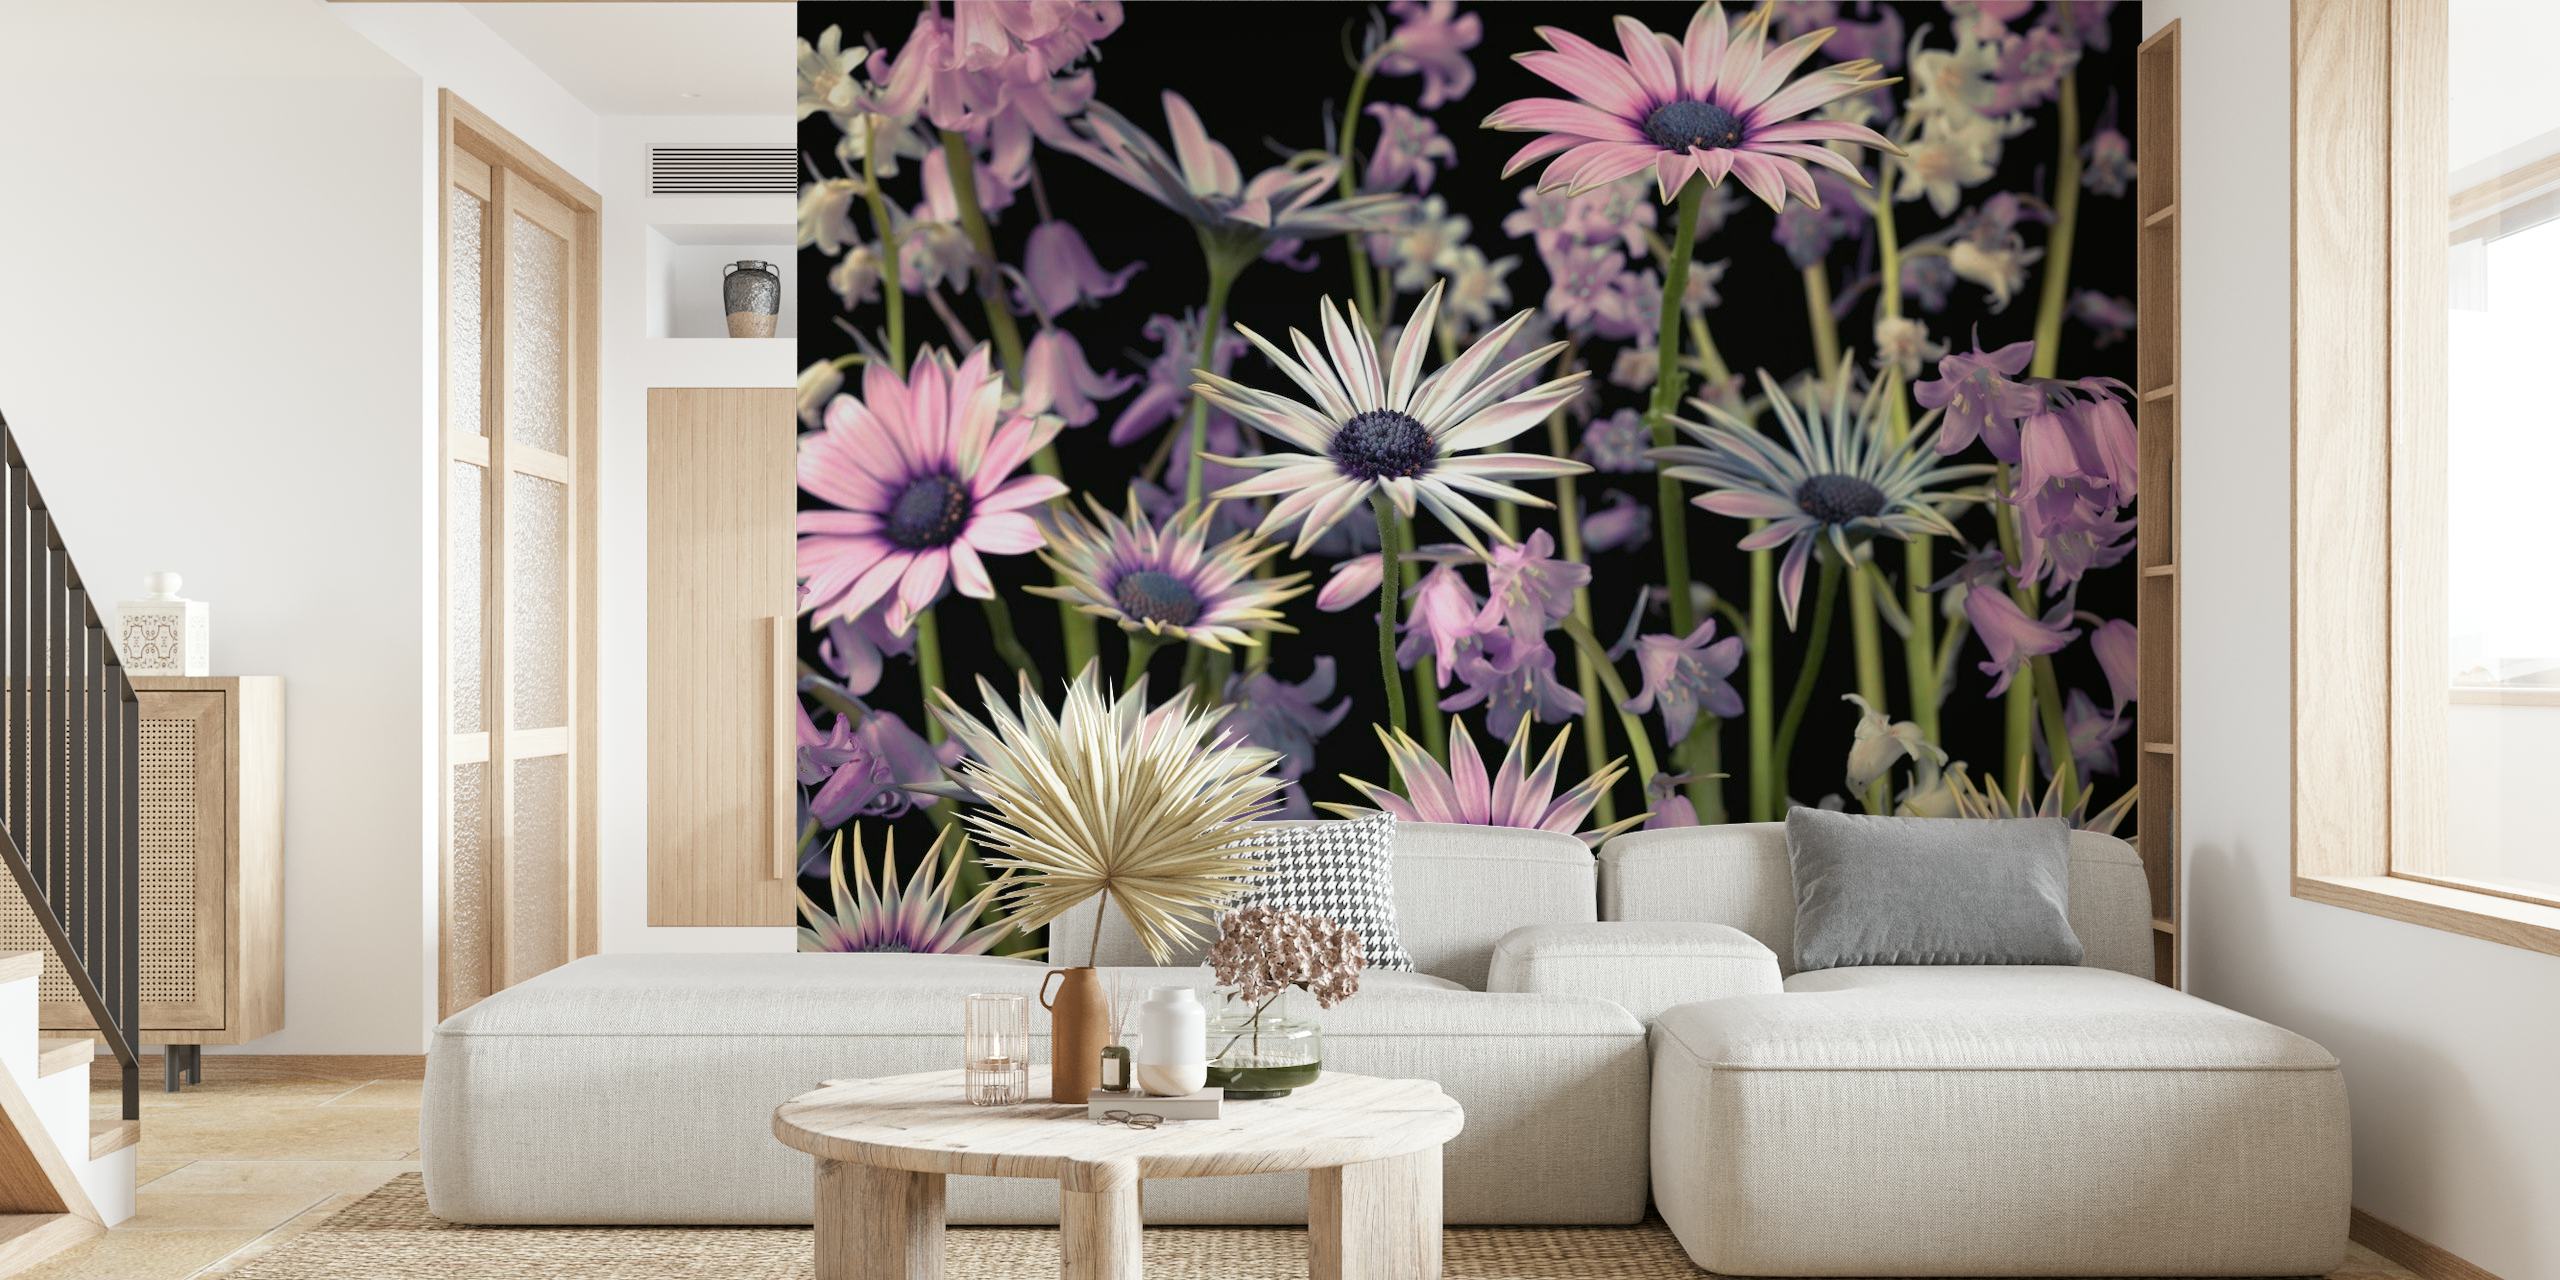 Zidna slika s livadnim cvijećem s ružičastim i ljubičastim poljskim cvijećem na tamnoj pozadini